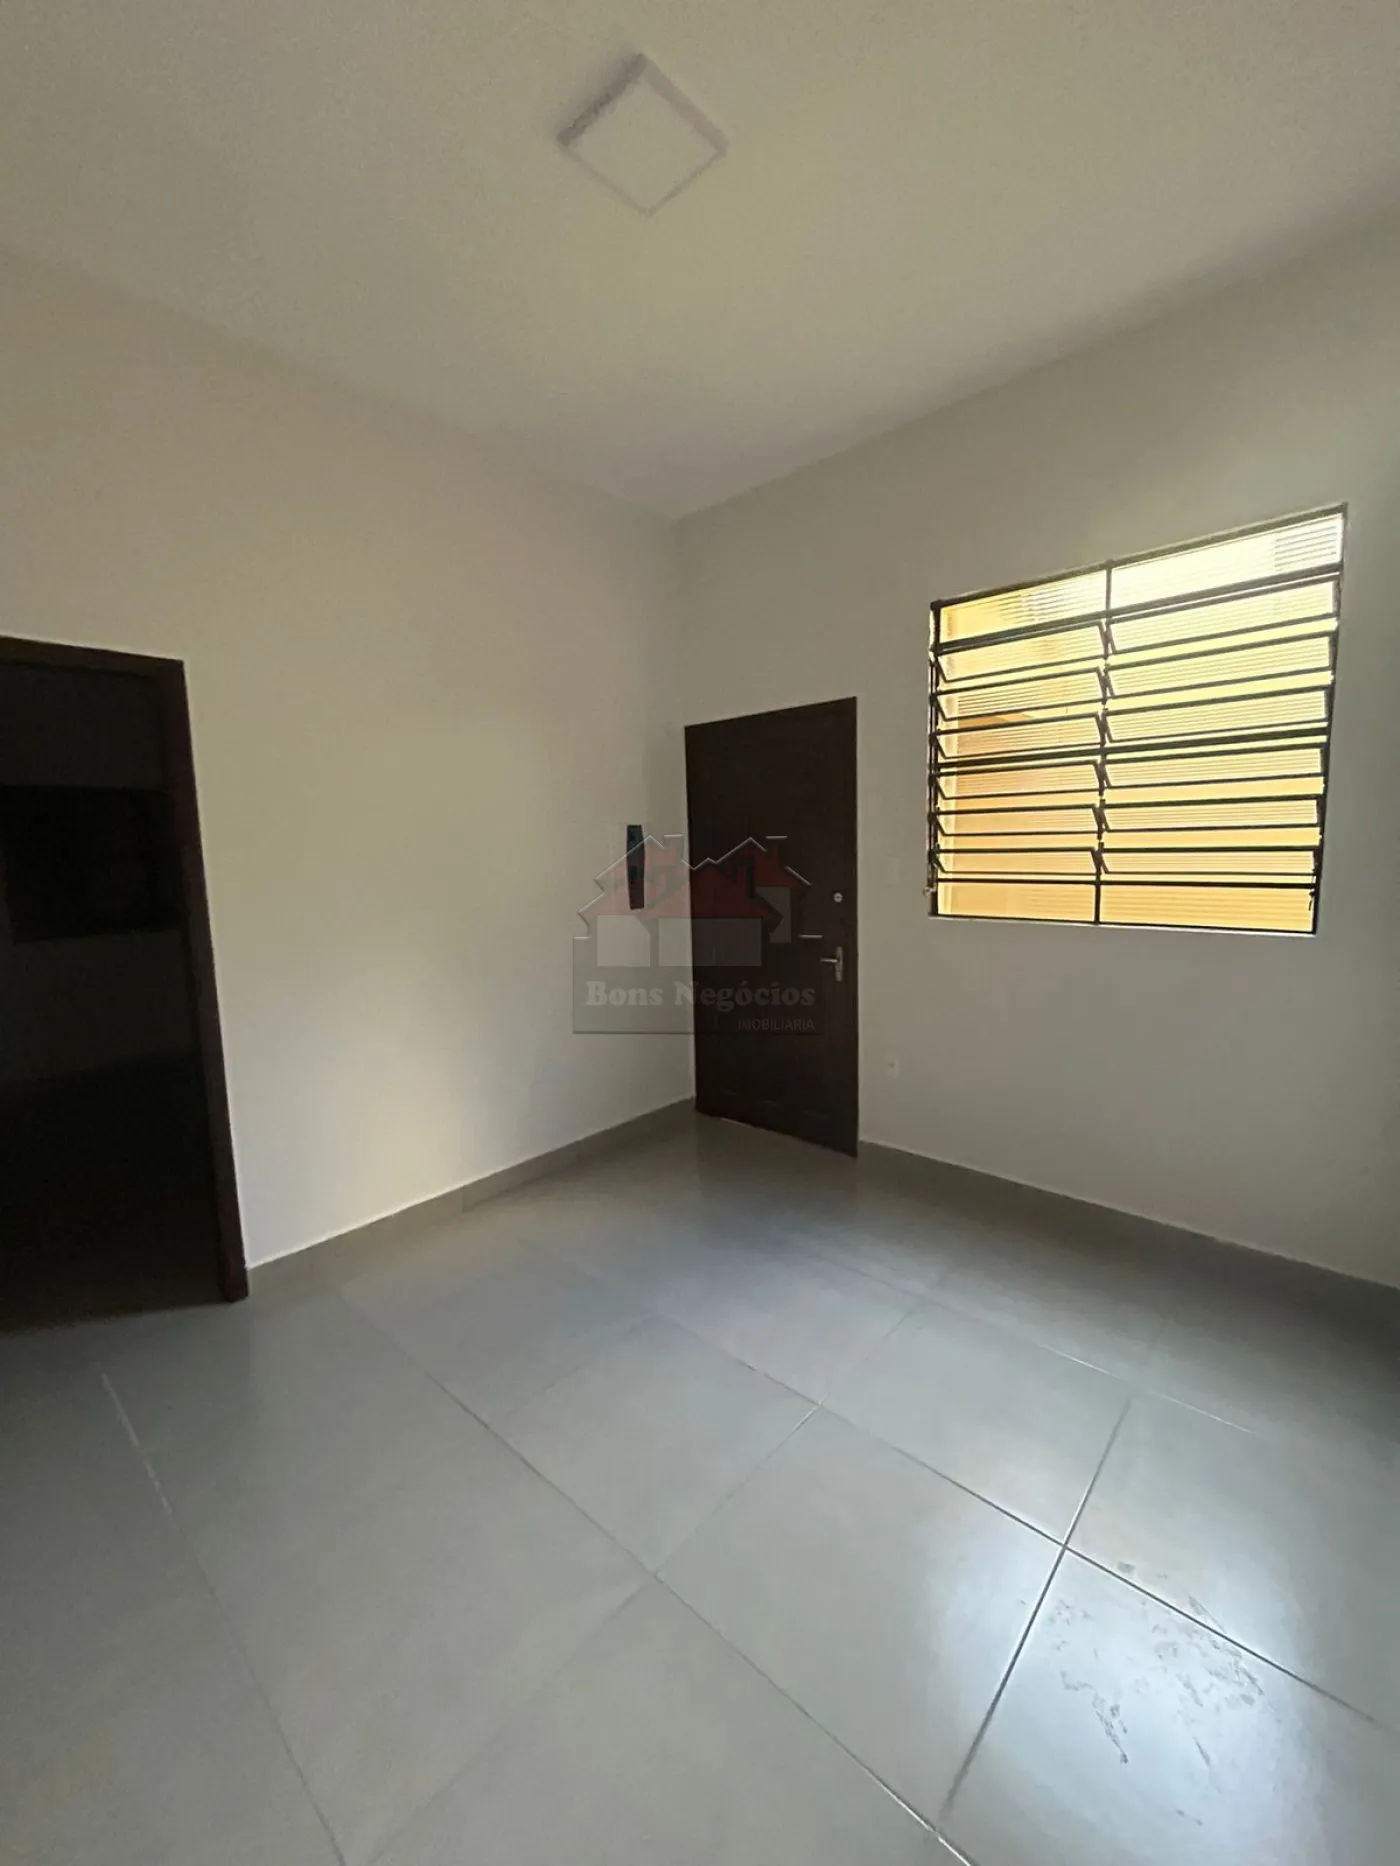 Alugar Casa / Residencial e Comercial em Ribeirão Preto R$ 1.250,00 - Foto 3